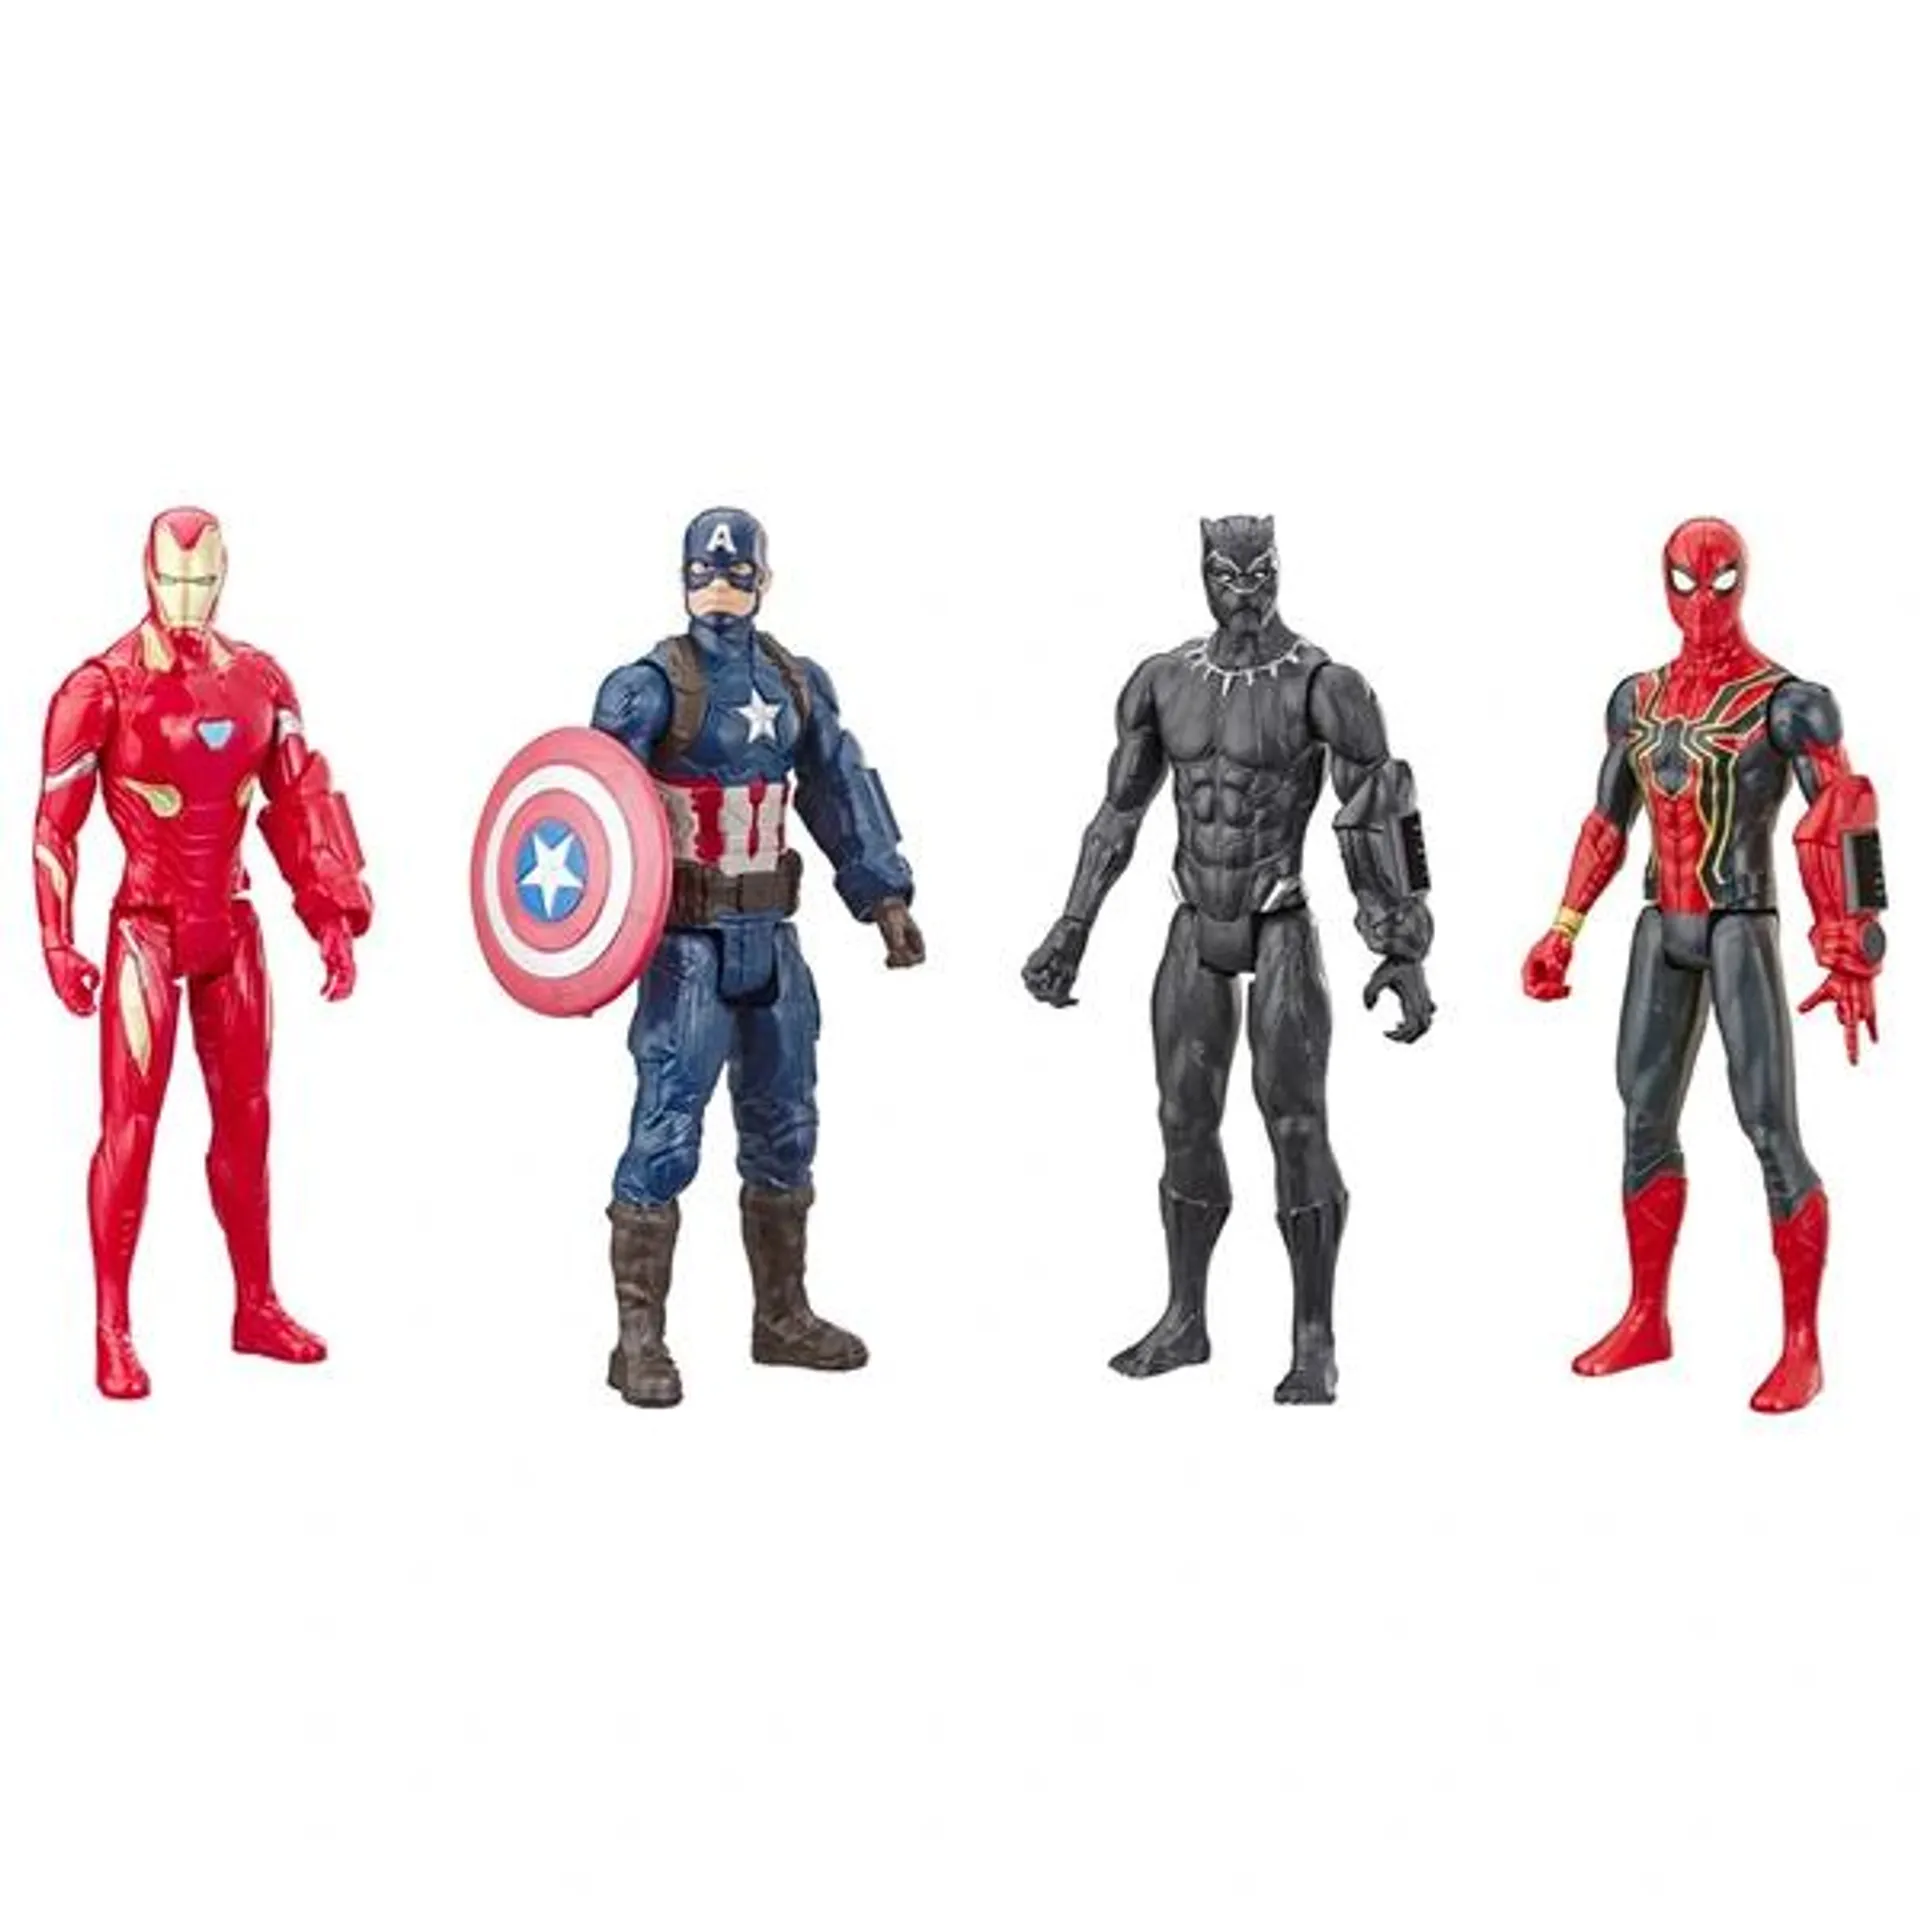 Marvel Avengers: Endgame Titan Hero Series 4-Pack